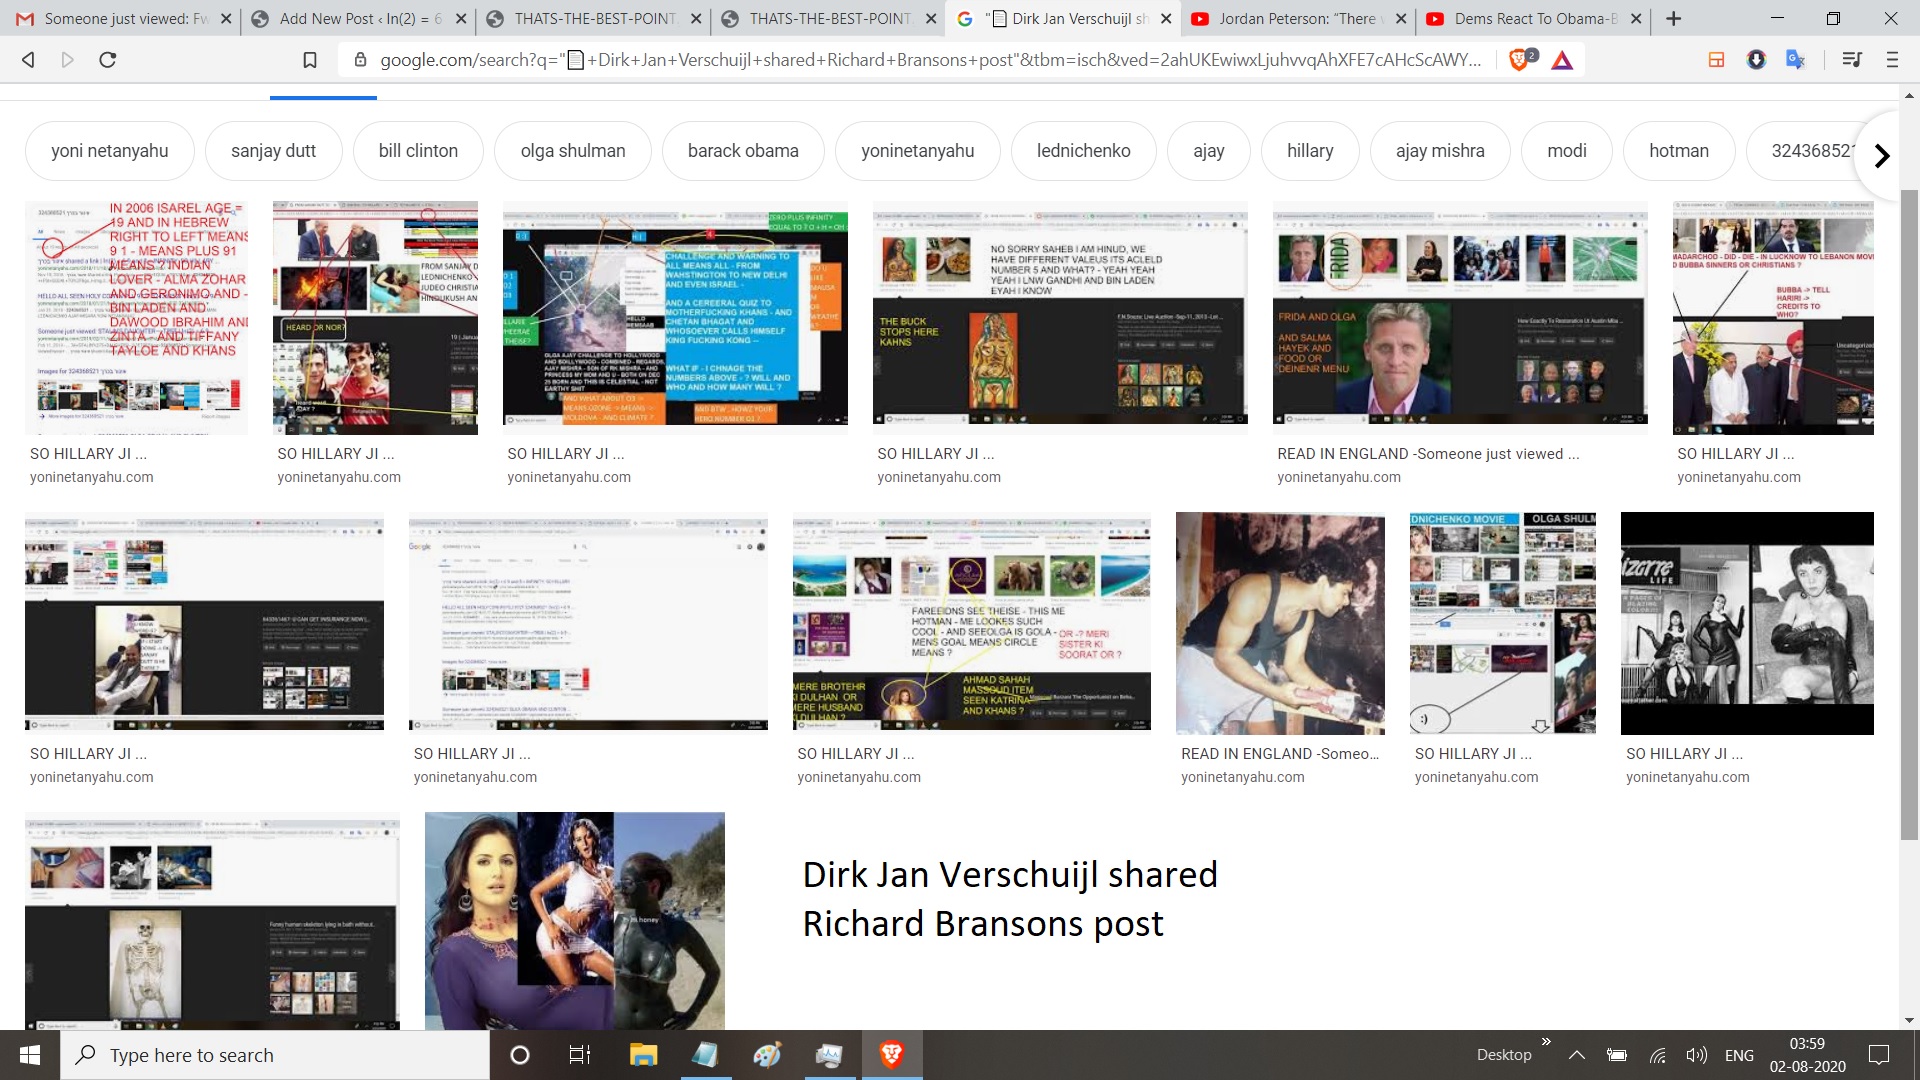 Dirk Jan Verschuijl shared Richard Bransons post